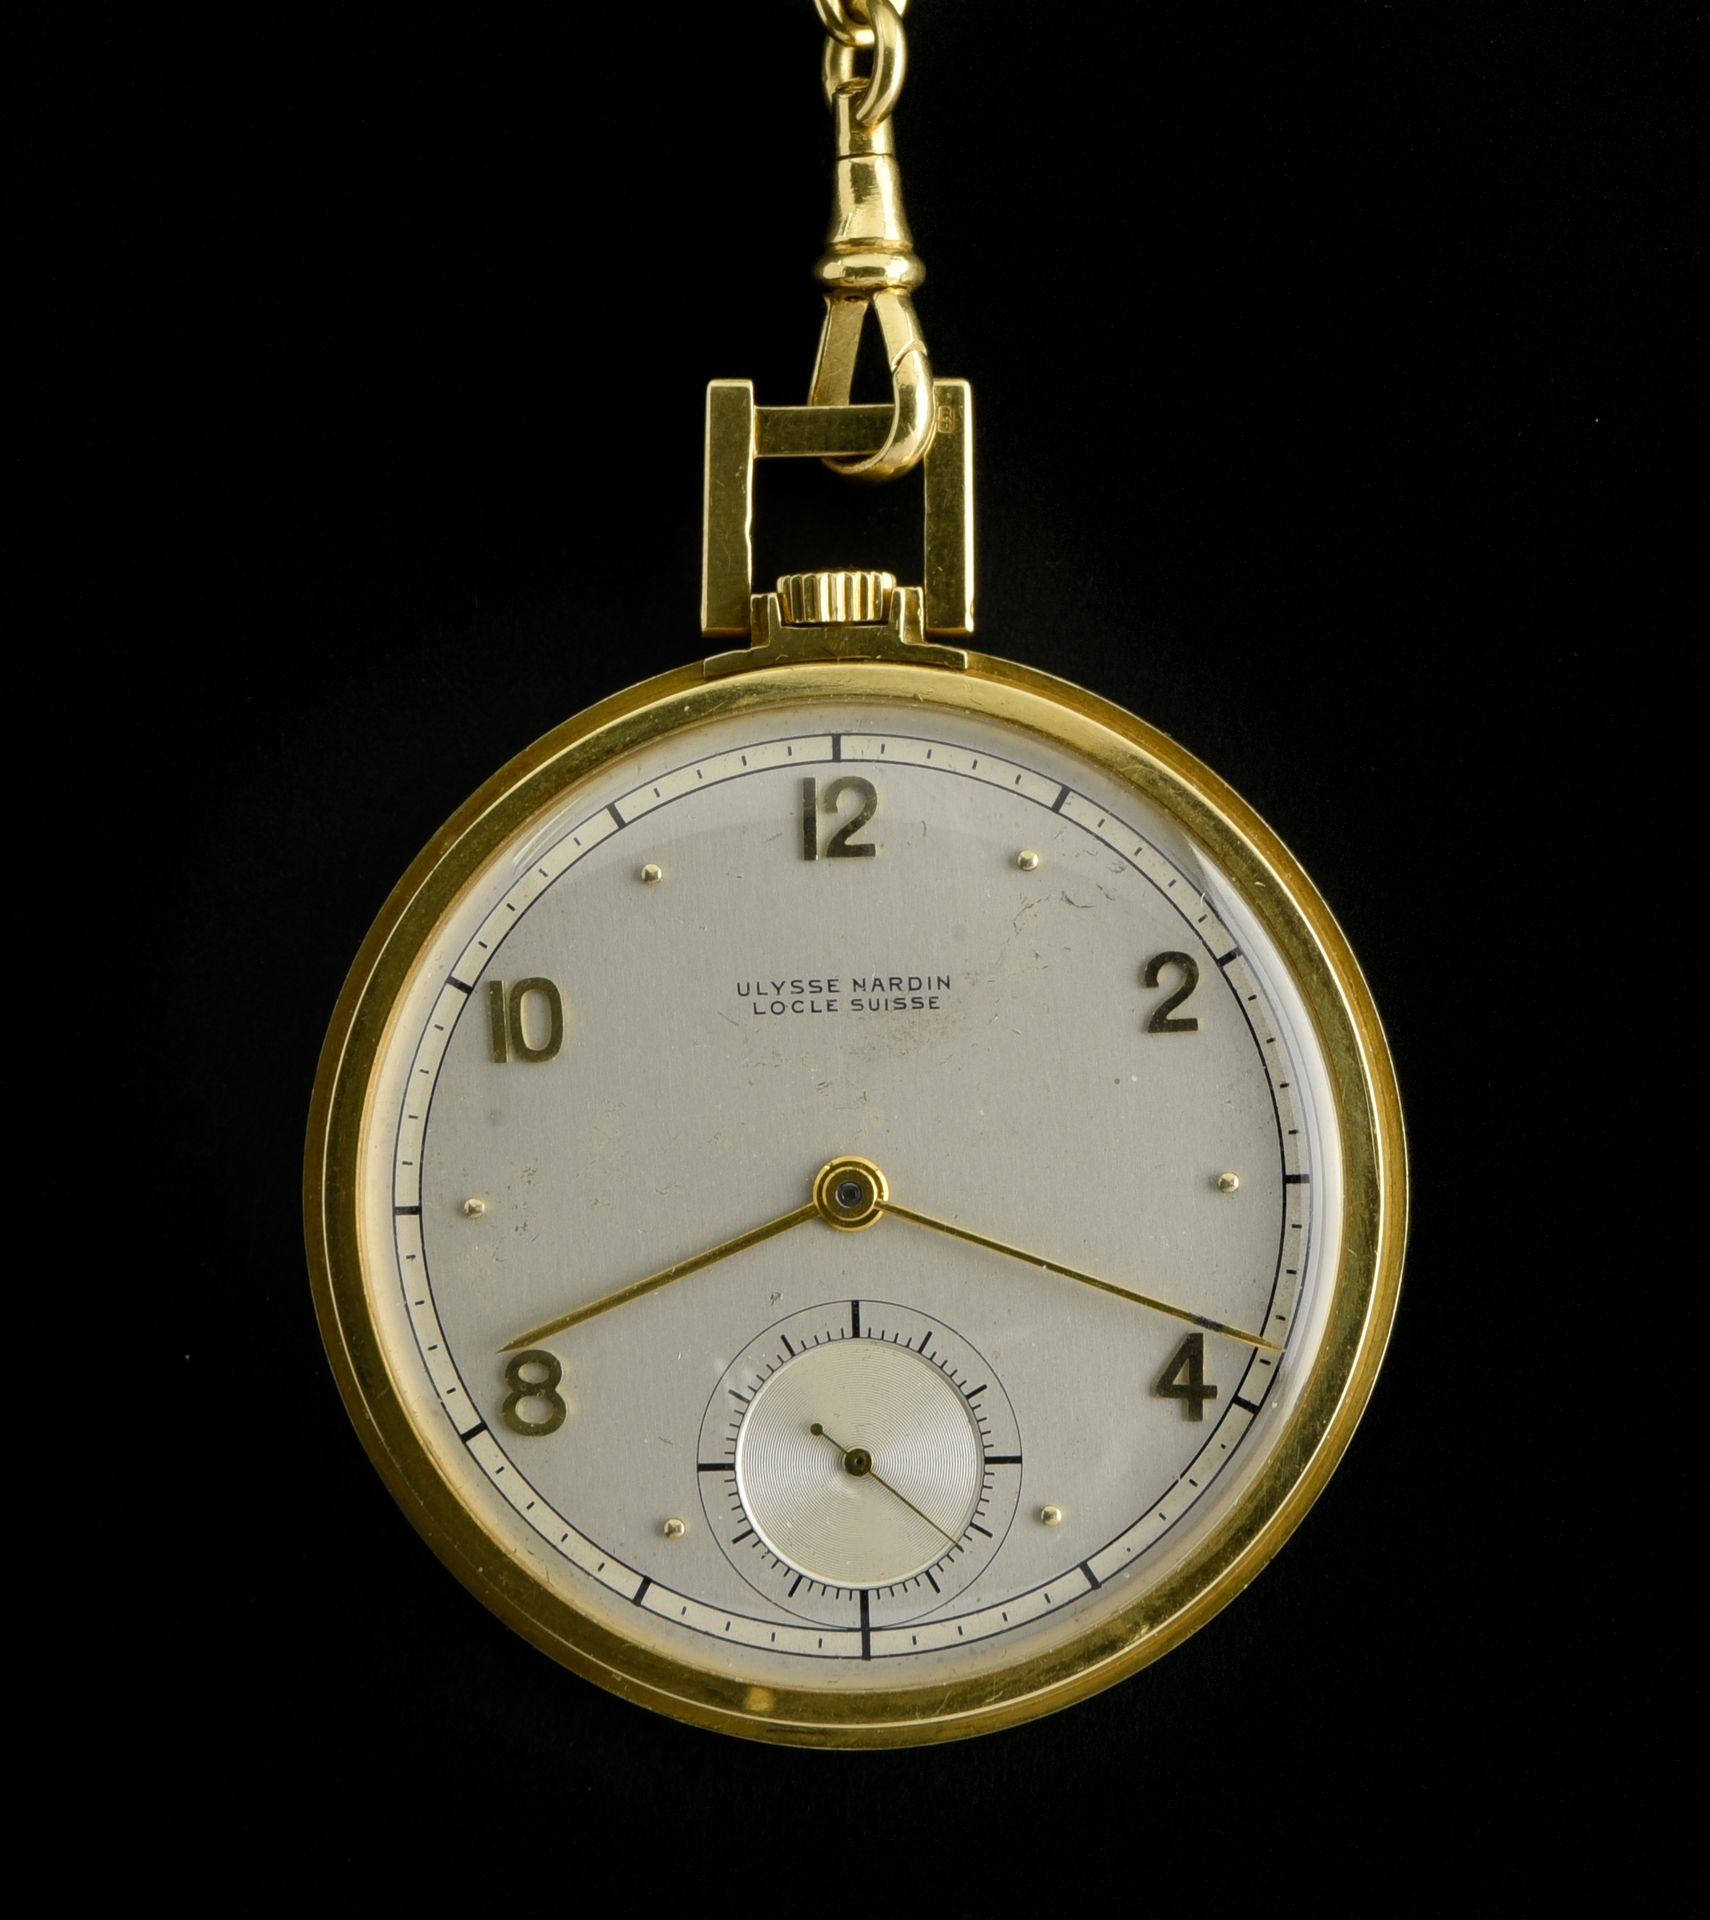 ULYSSE NARDIN Ulysse Nardin

Ulysse Nardin chronometer watch

SWITZERLAND

18k g&hellip;